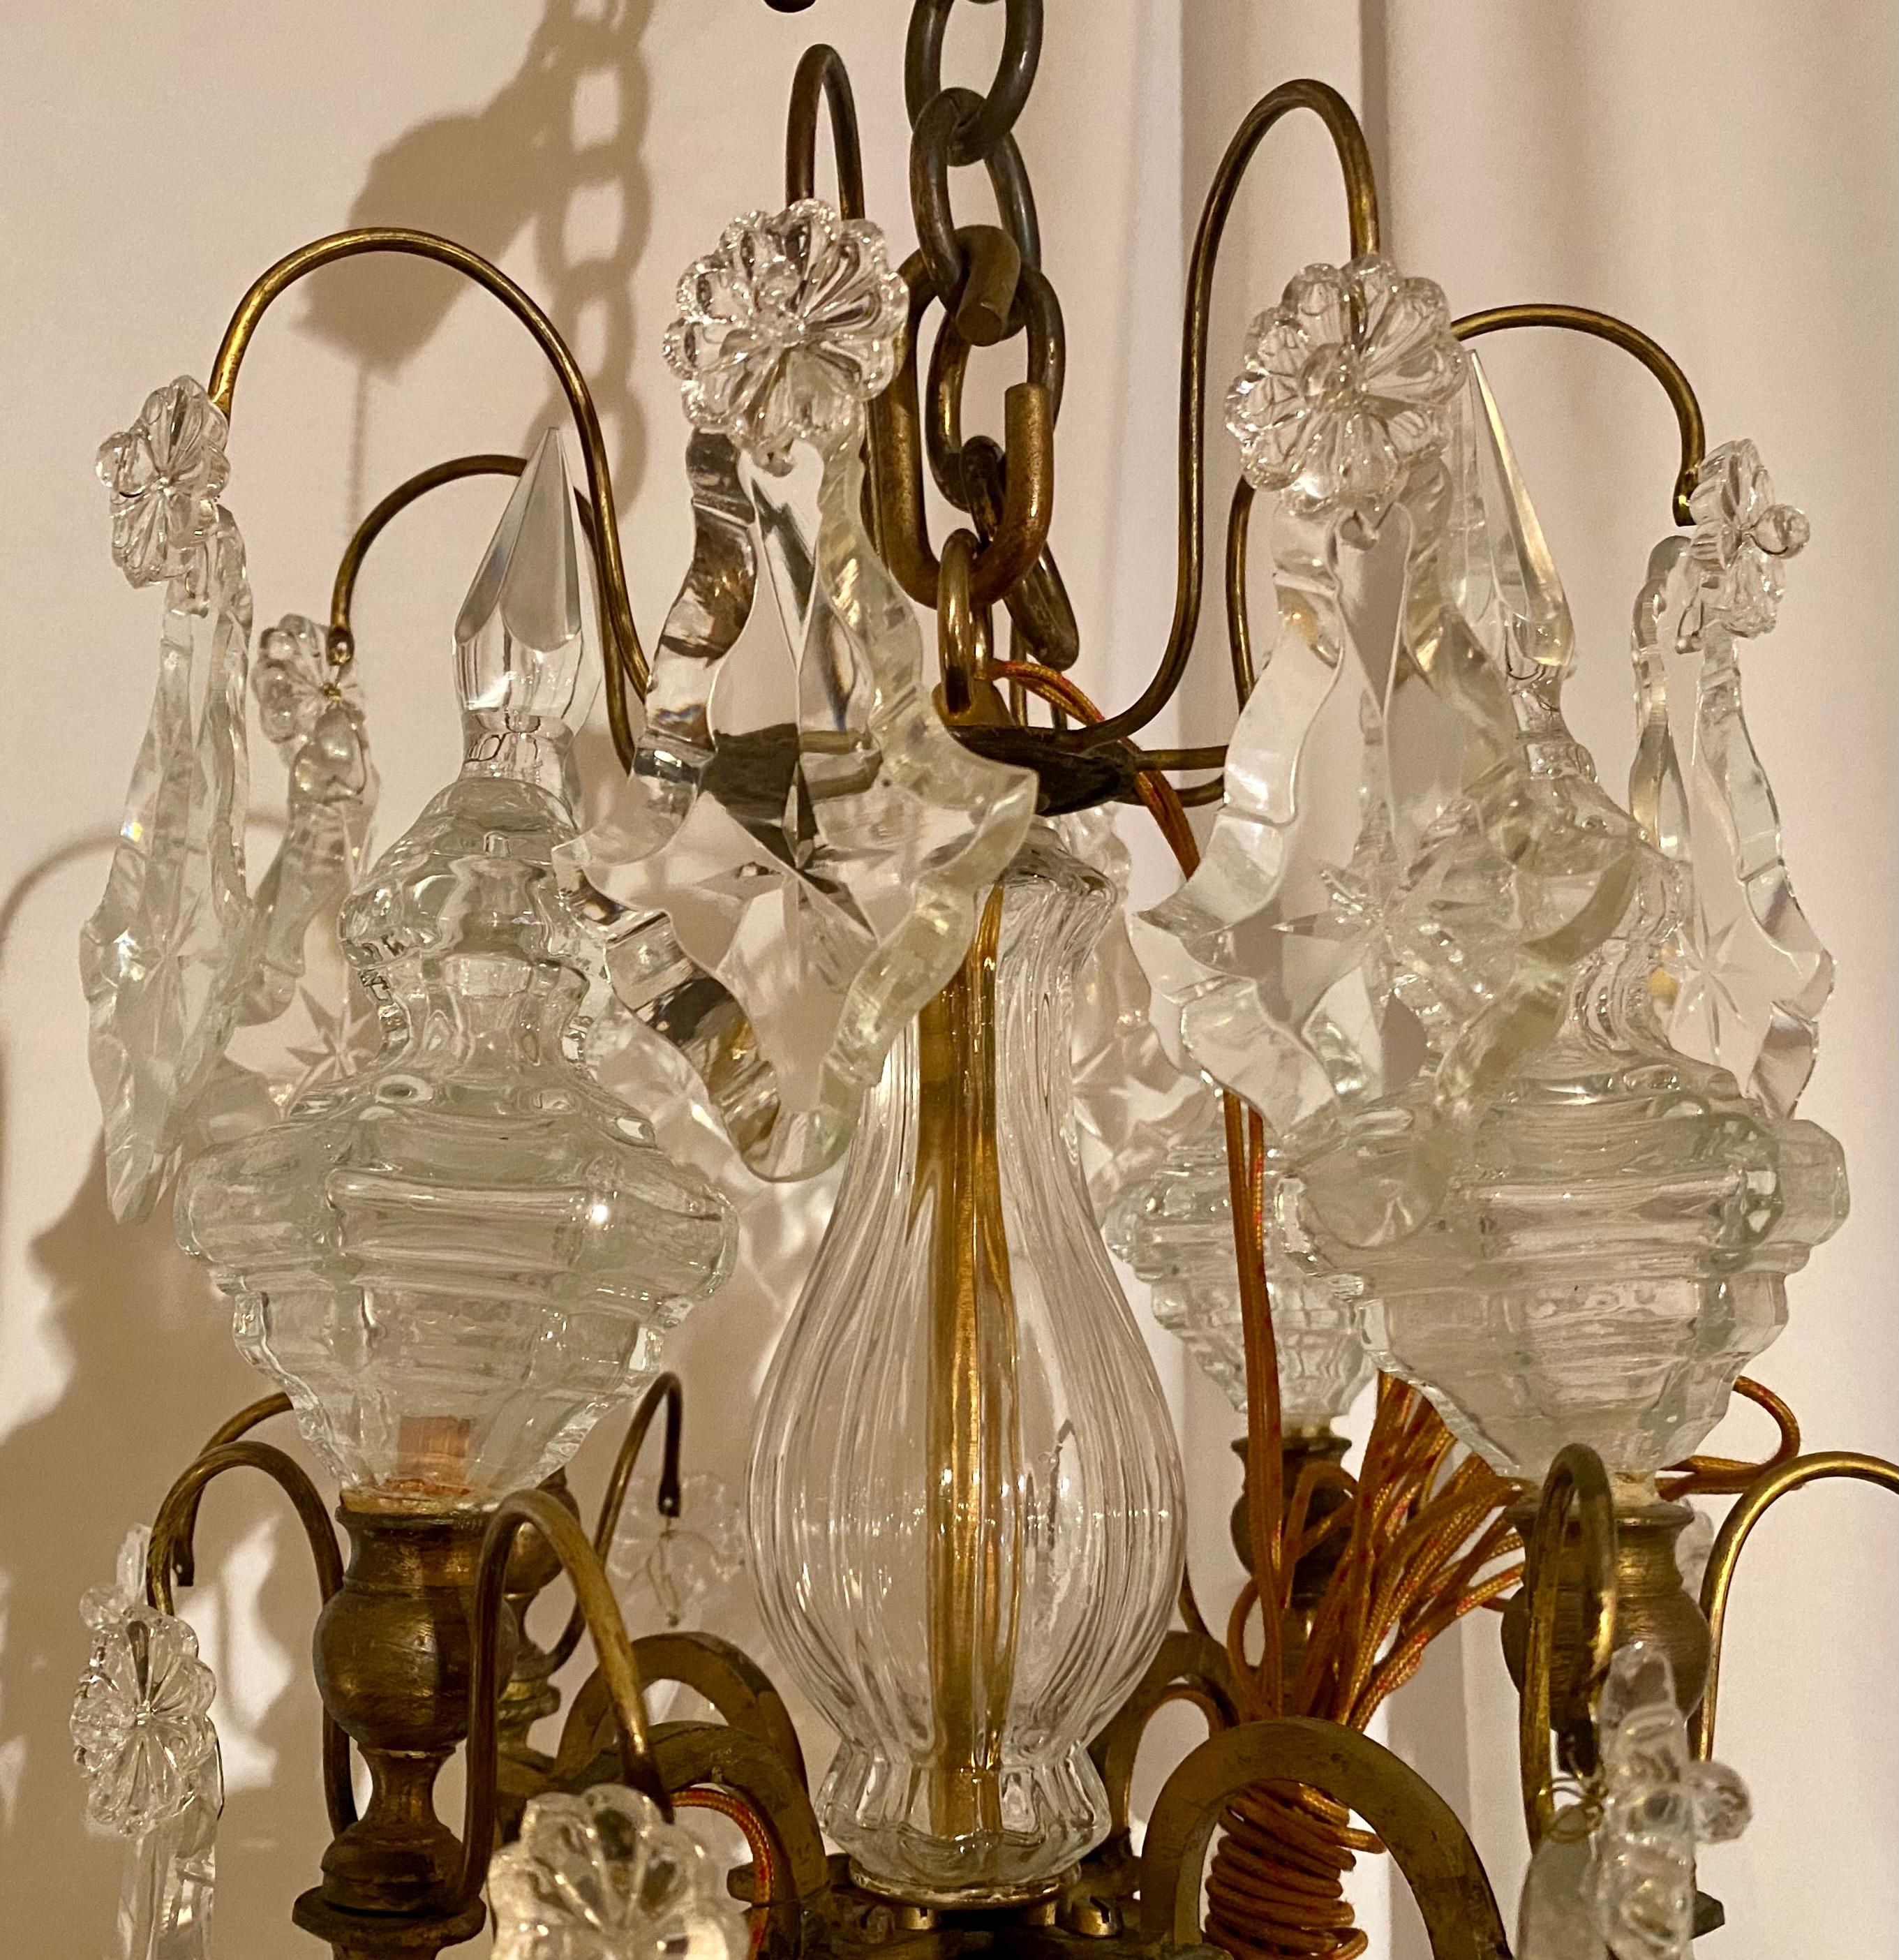 Antiker französischer Kronleuchter aus Baccarat-Kristall und Bronze, um 1880. Alles Originalglas.
CHC004.